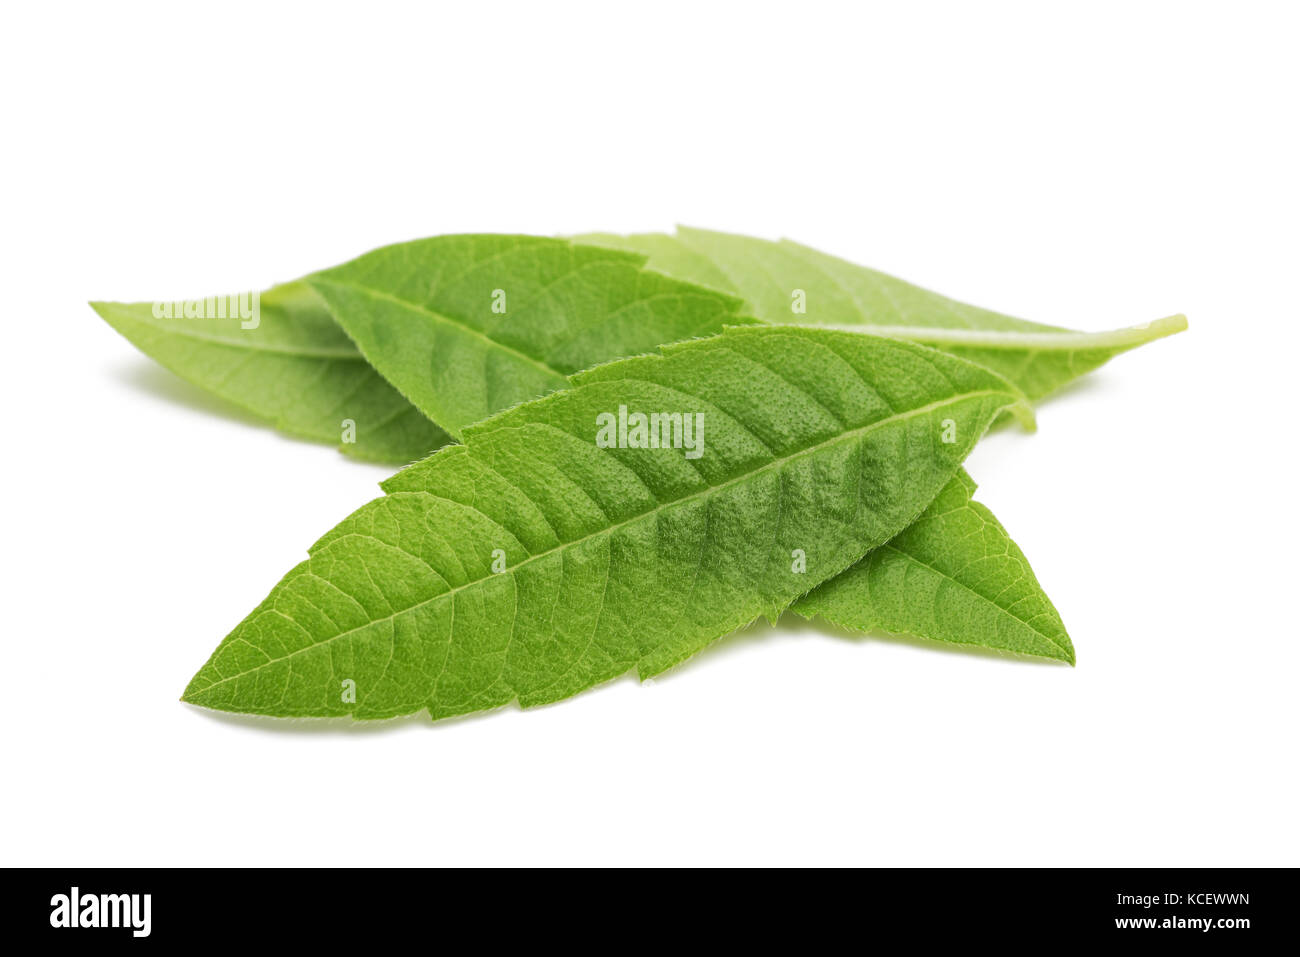 Lemon Verbena leaves (beebrush) isolated on white background Stock Photo